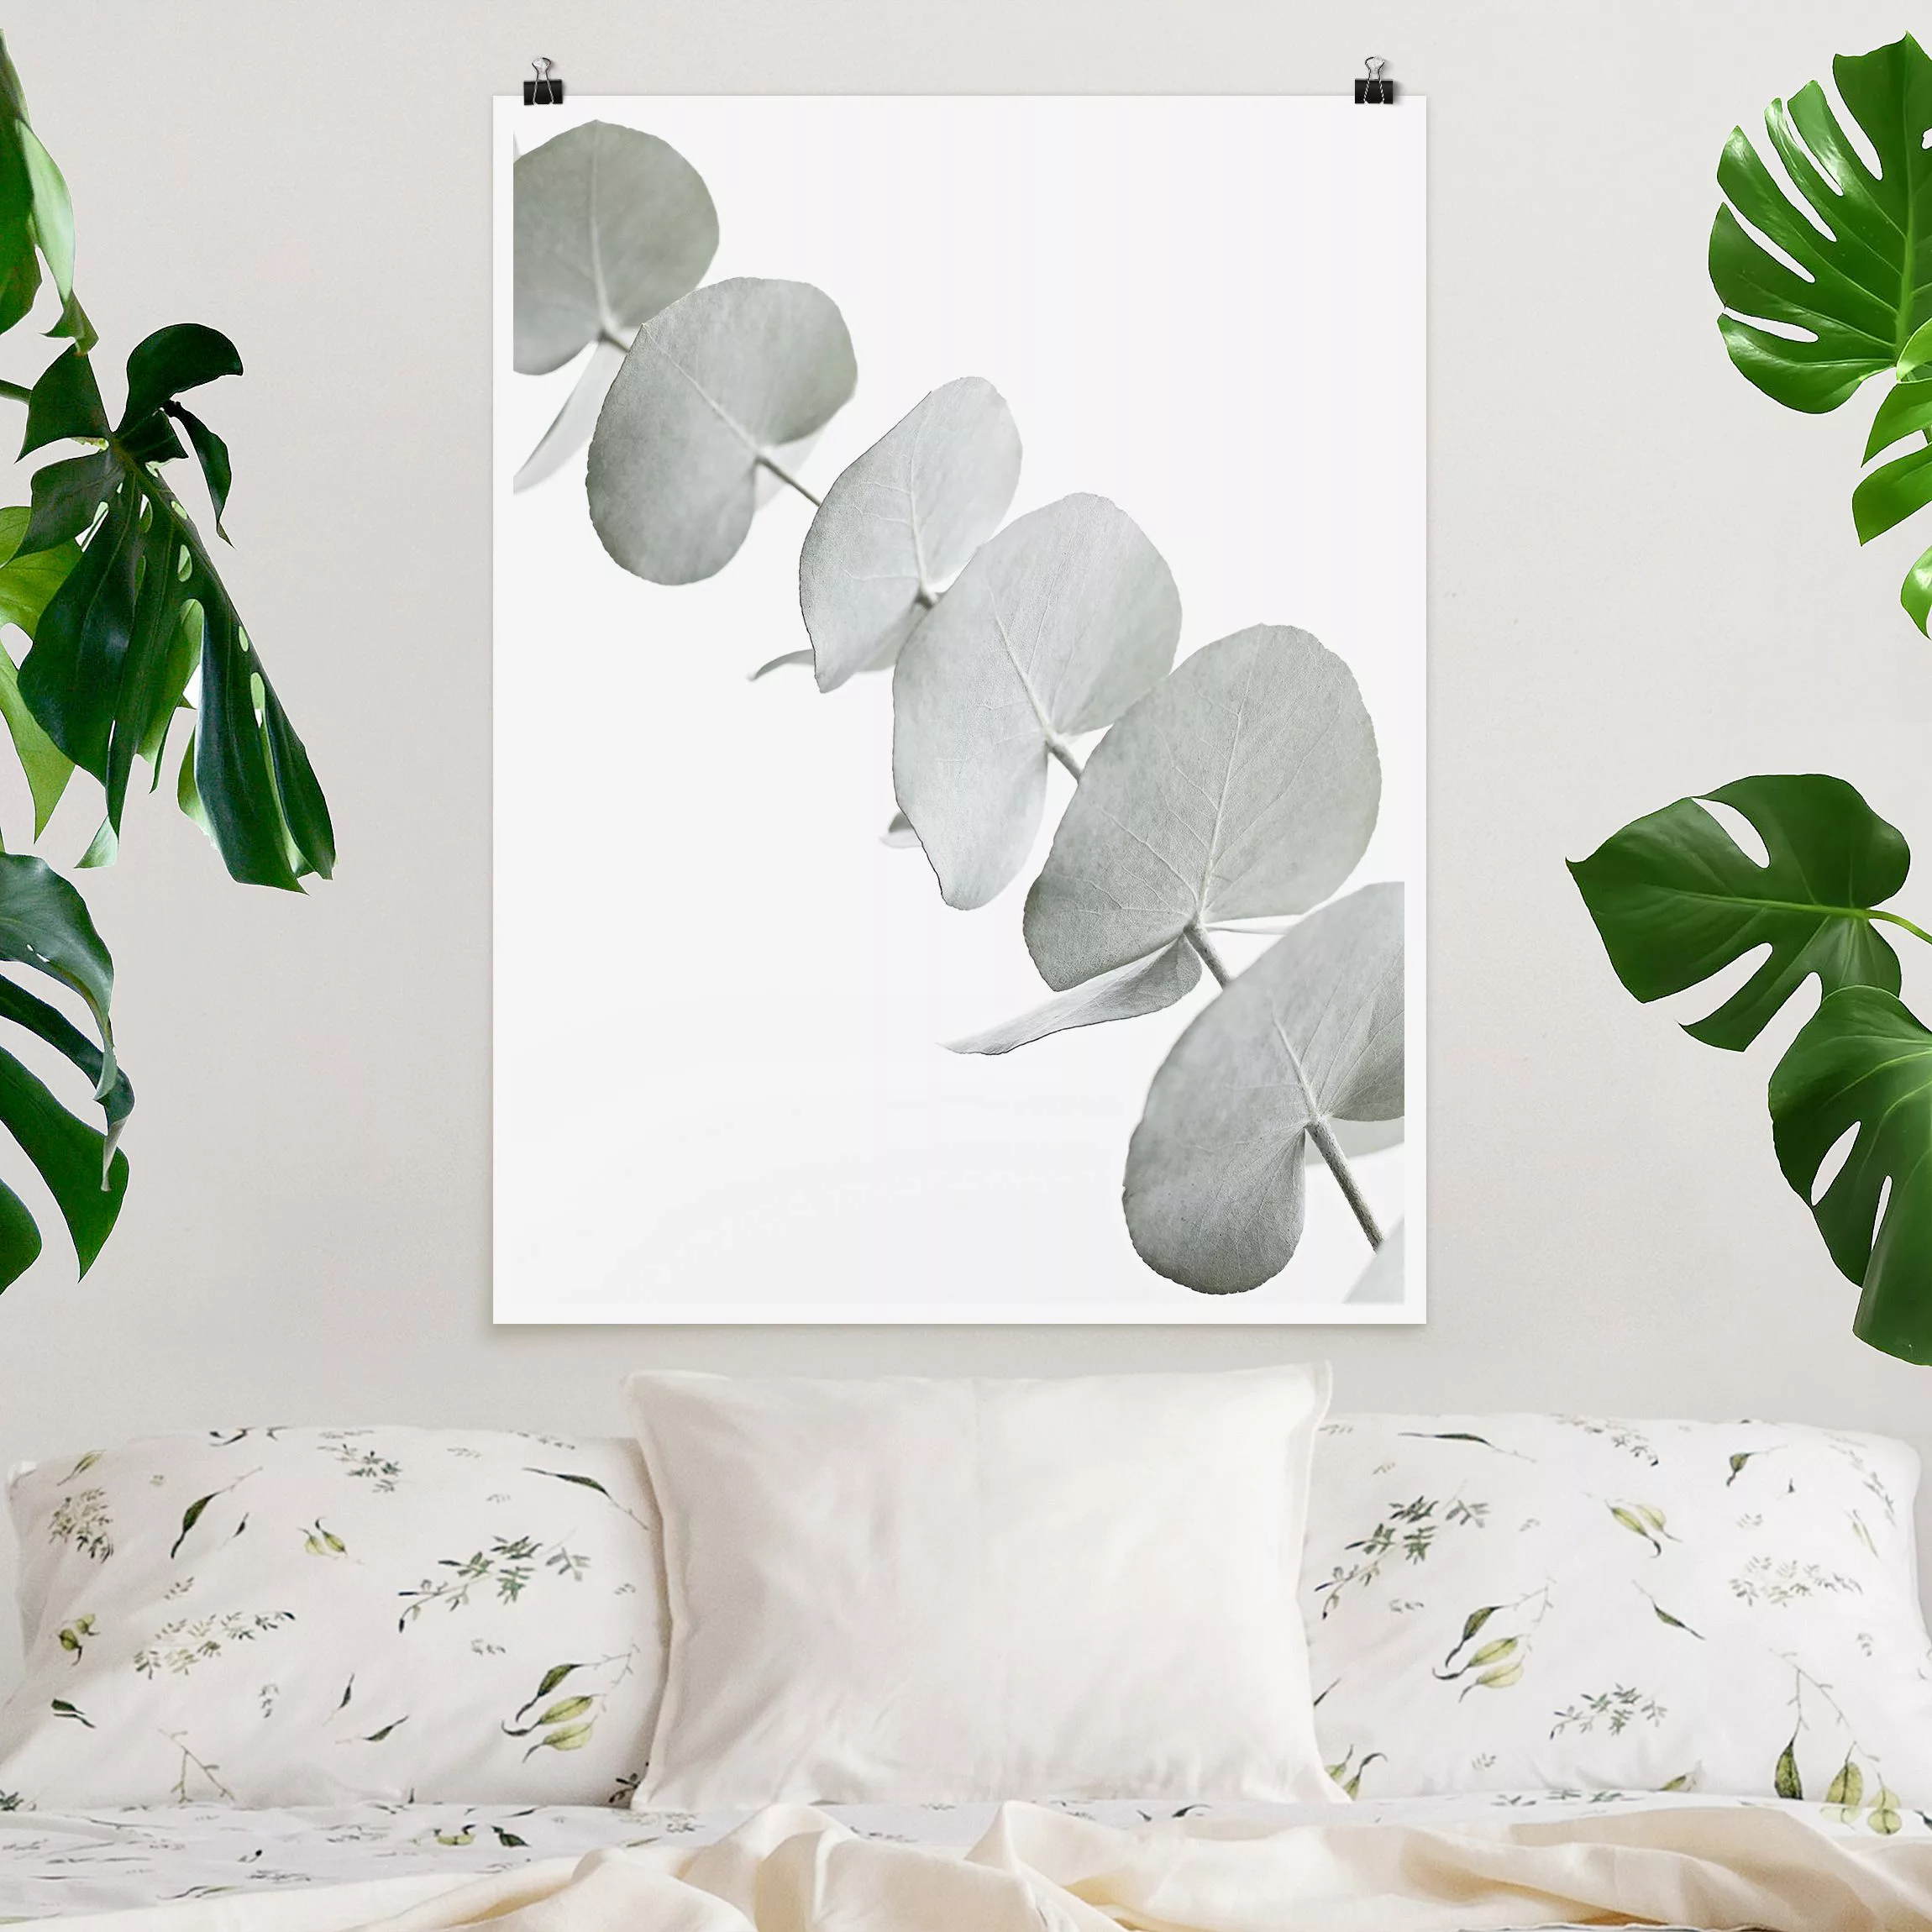 Poster Eukalyptuszweig im Weißen Licht günstig online kaufen